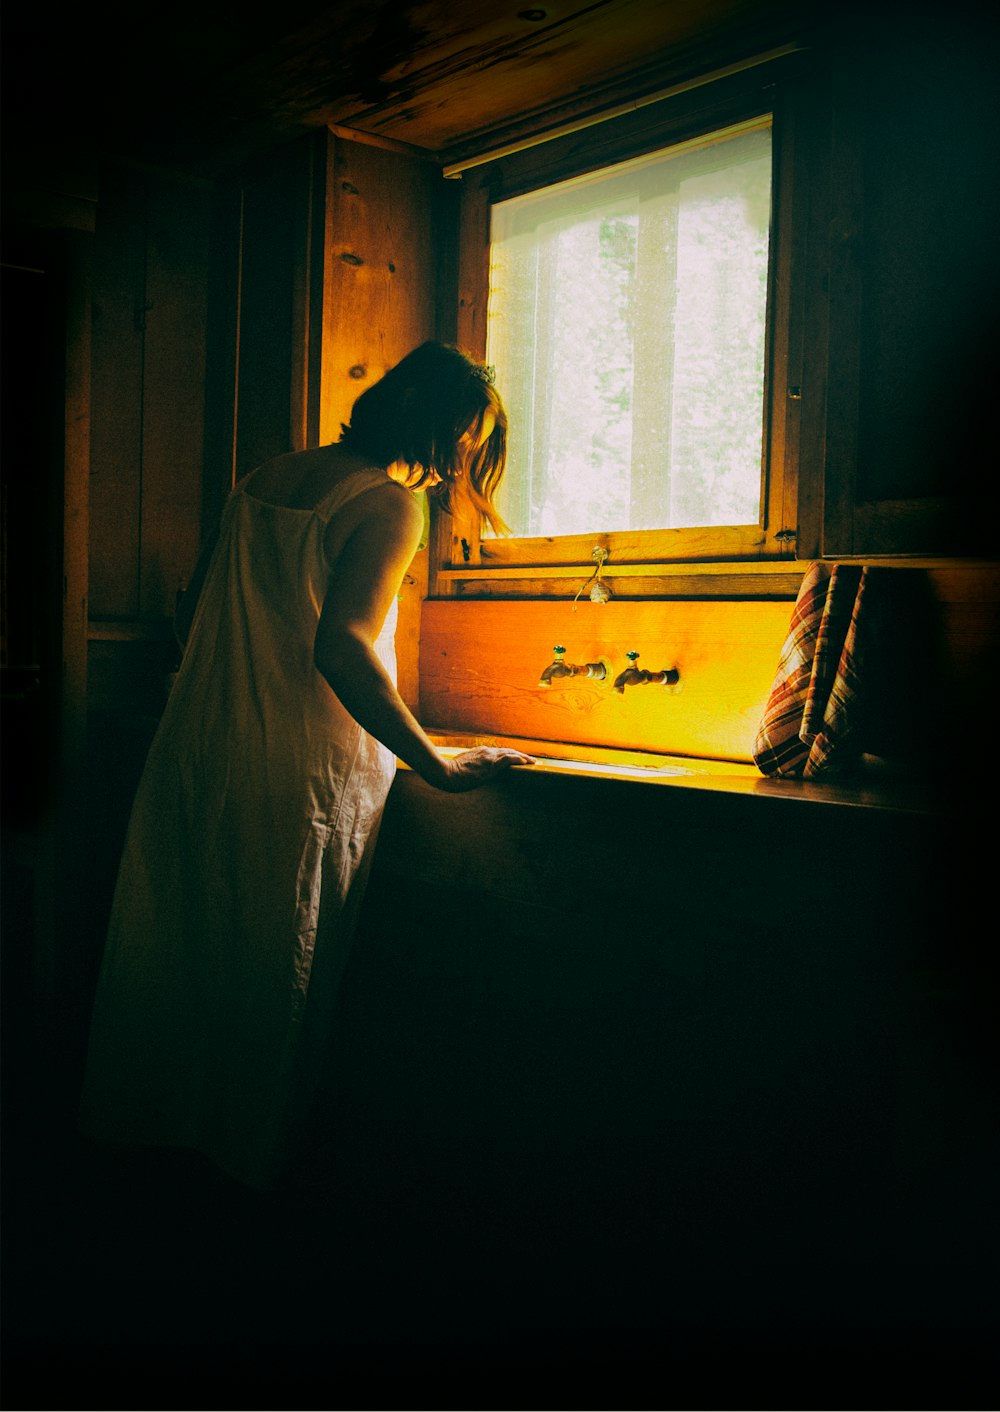 Frau im weißen Kleid steht am Fenster